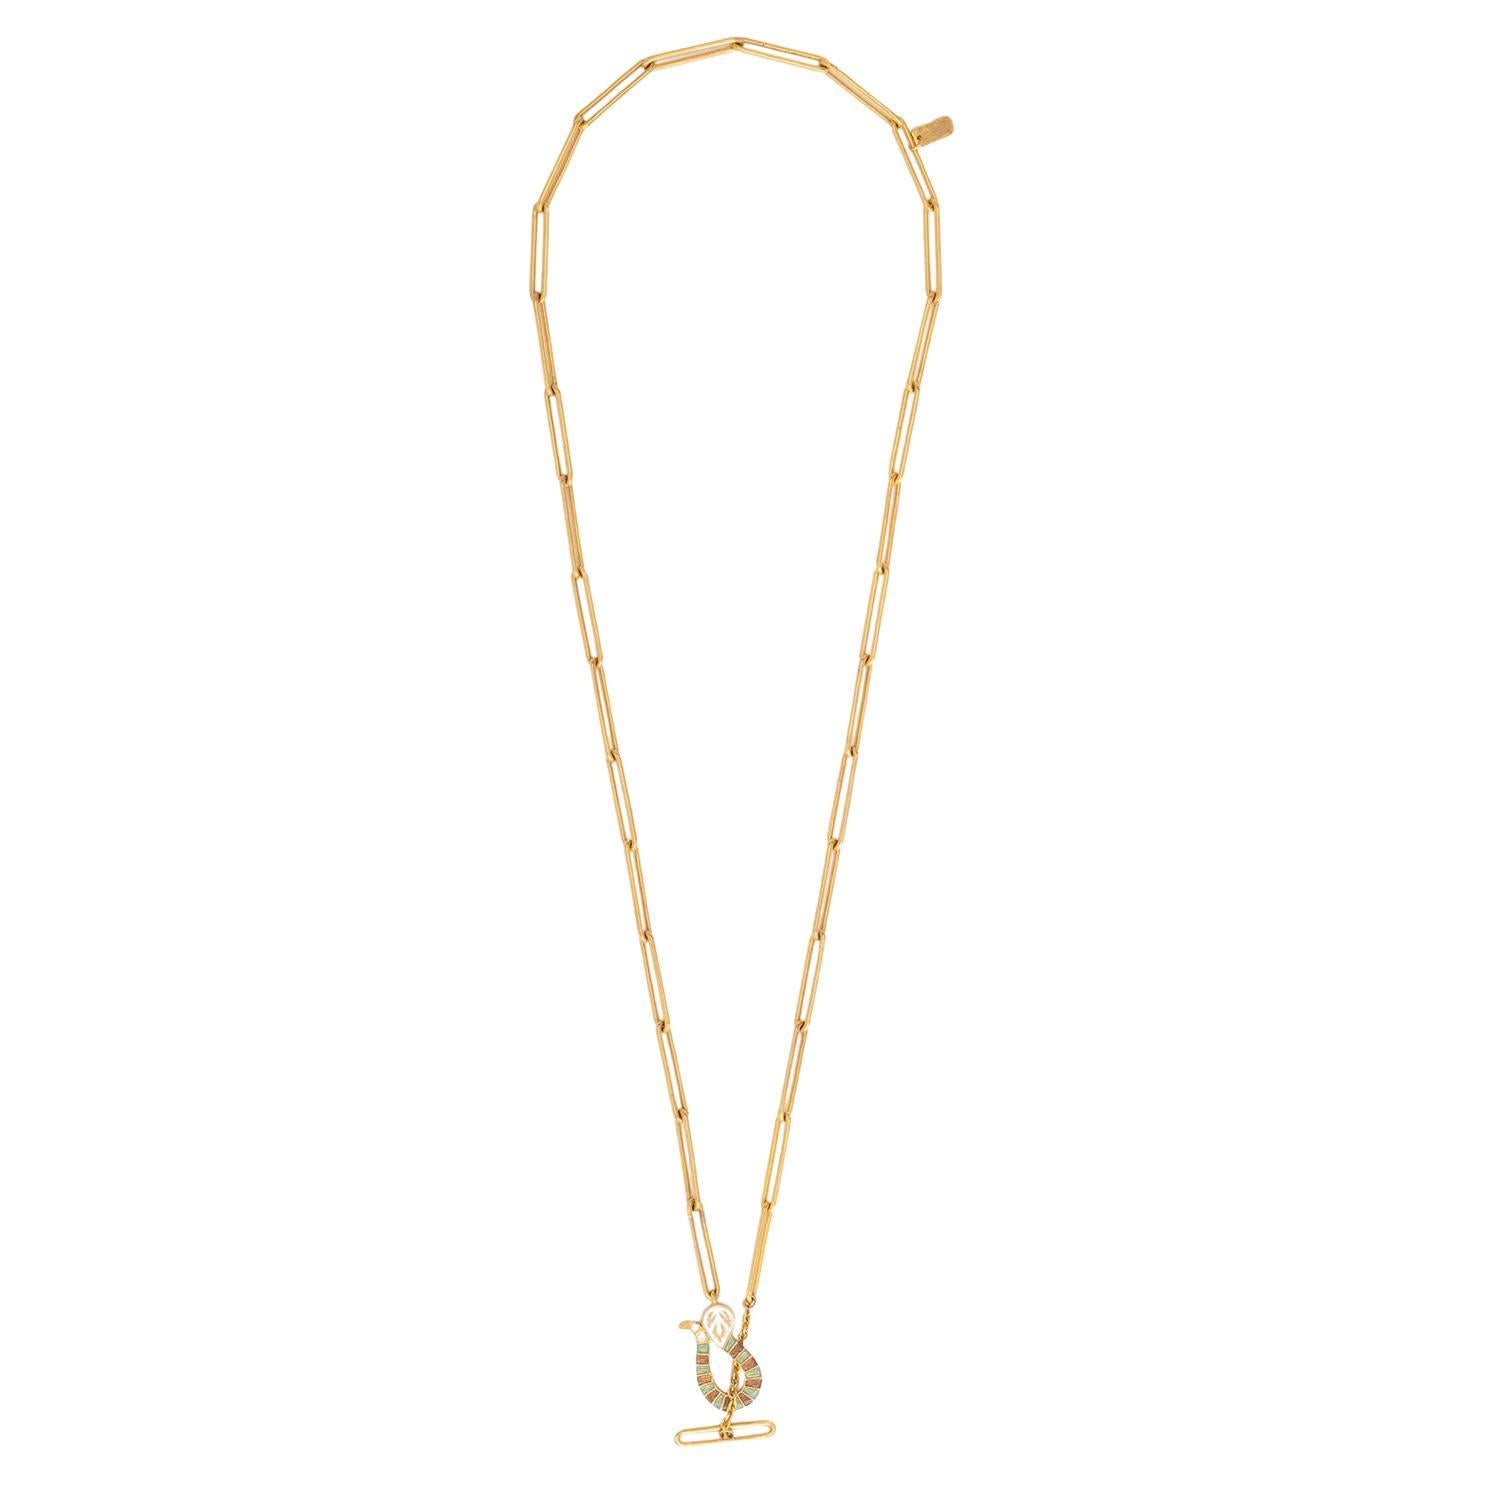 Wir präsentieren unsere exquisite 22 Karat Gold Serpentine Link Chain Necklace - ein zeitloses Meisterwerk, das die Kunstfertigkeit der indischen Meenakari-Technik verkörpert und jetzt für die moderne Frau neu interpretiert wurde. Diese Halskette